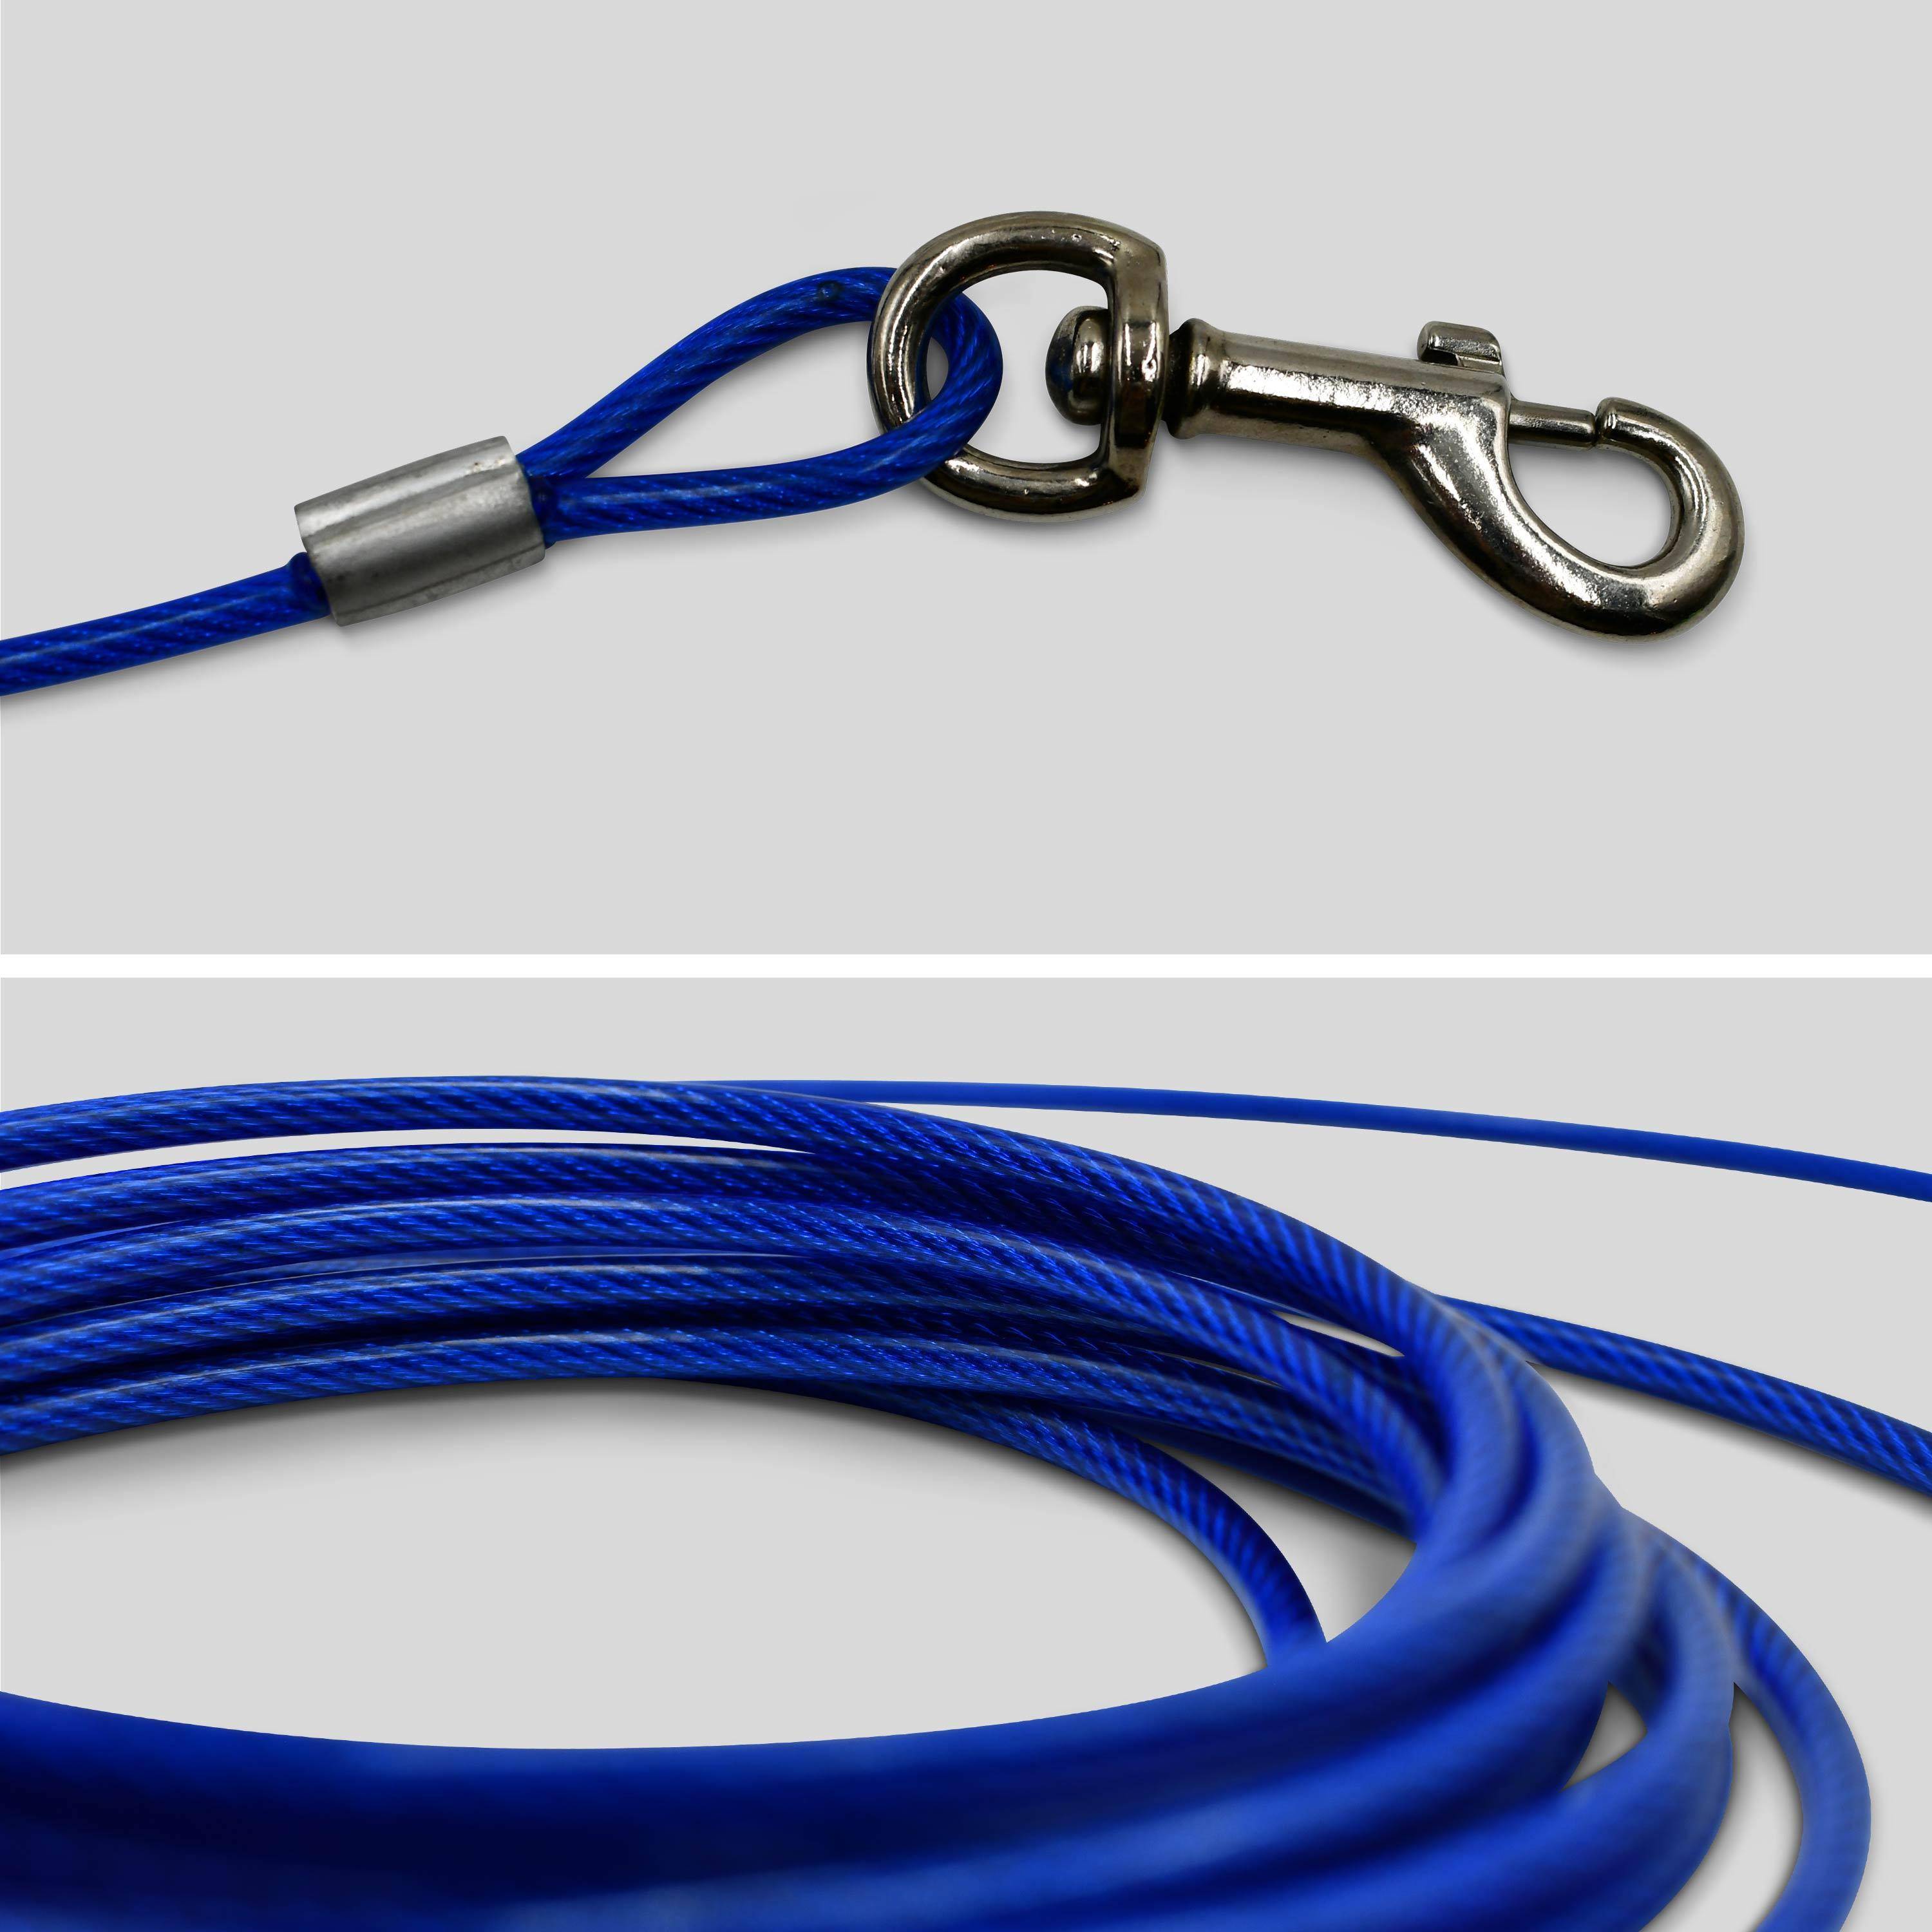 Câble gainé de 6m de long et 5mm d’épaisseur bleu, avec mousquetons Photo2